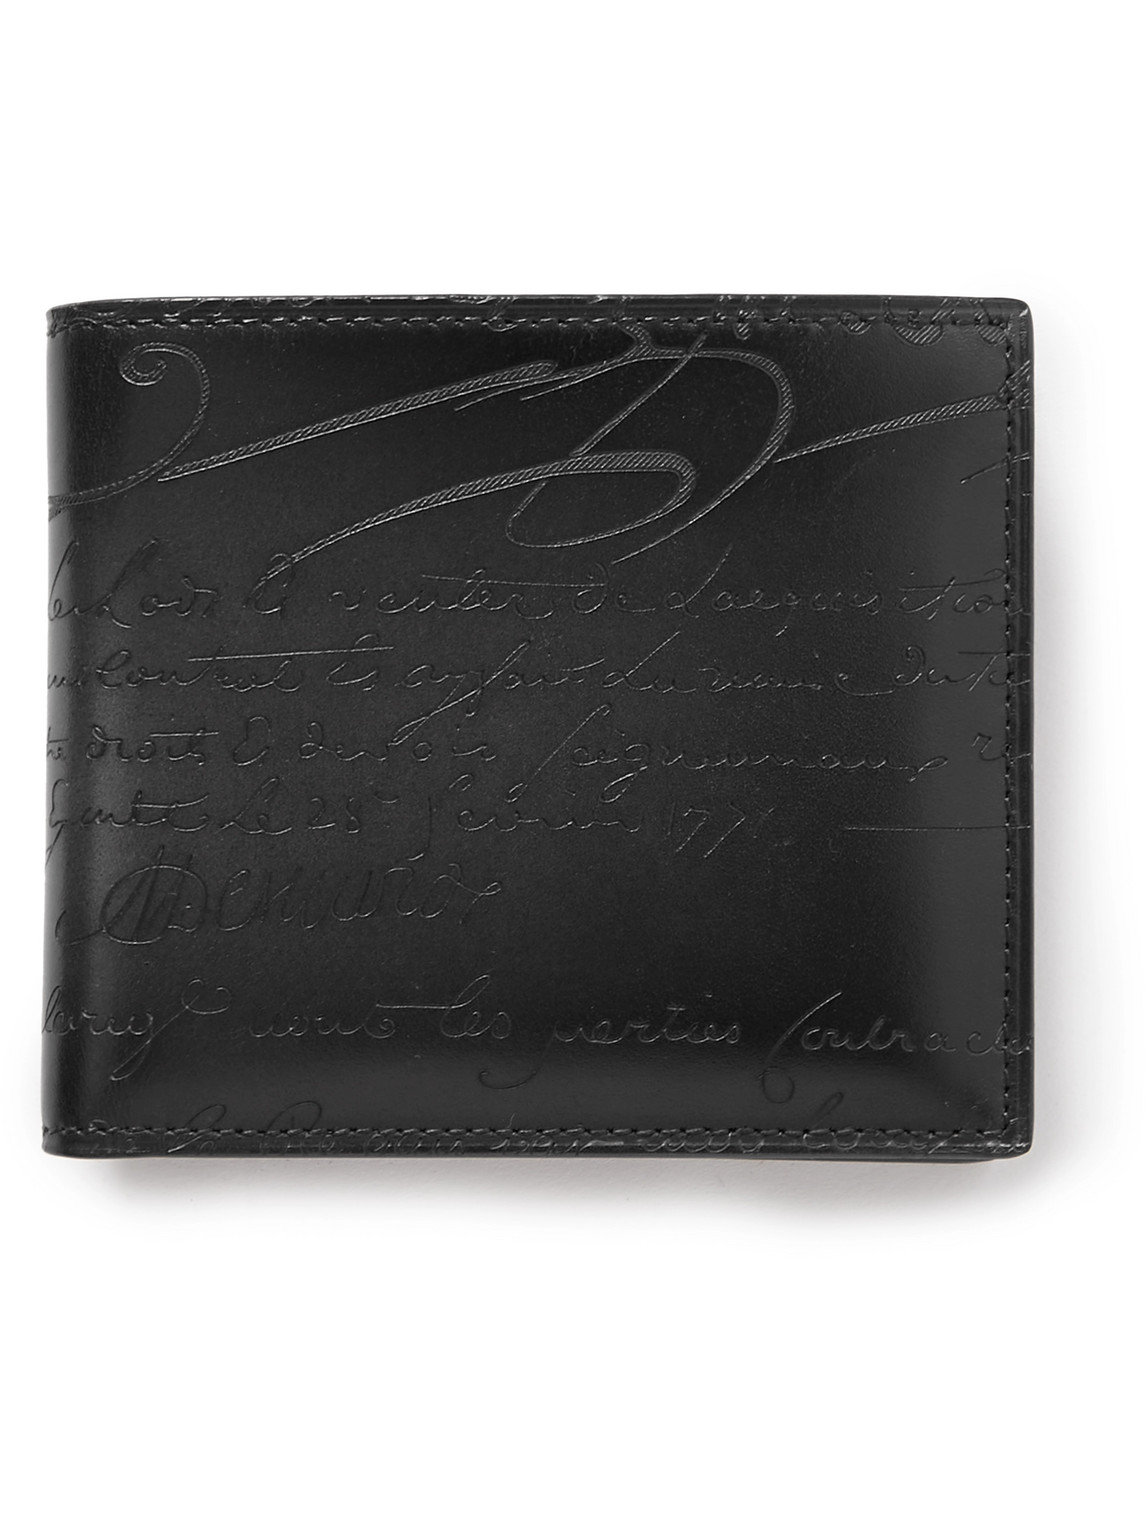 Berluti Makore Scritto Venezia Leather Billfold Wallet In Black